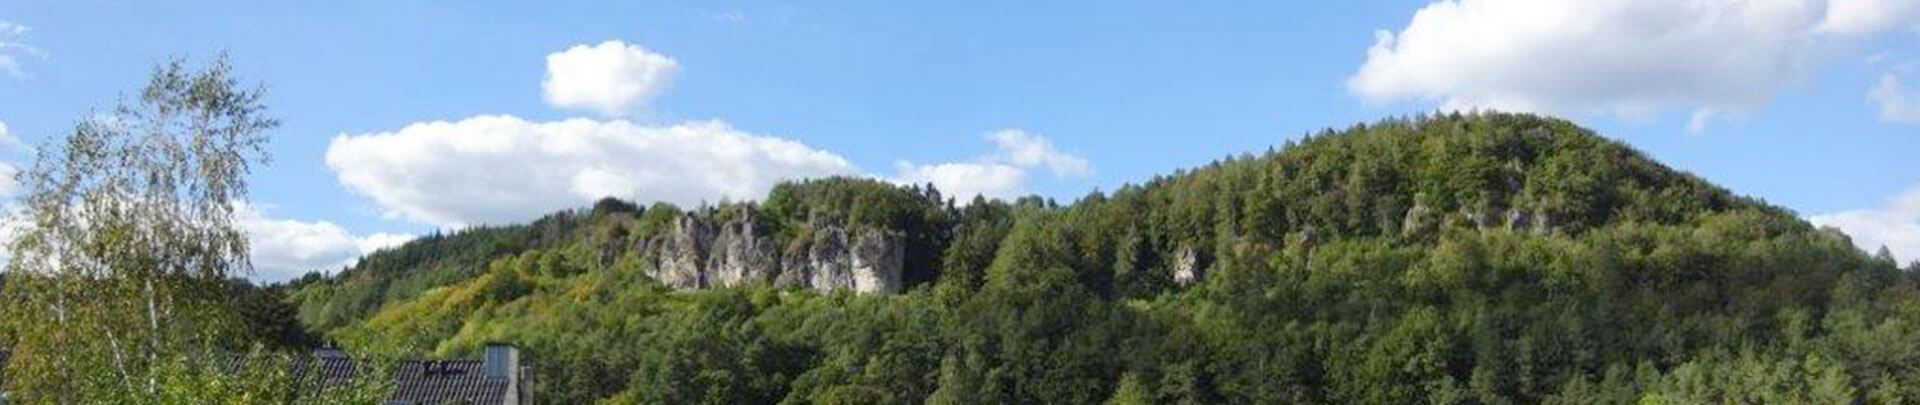 Berge Geroldstein